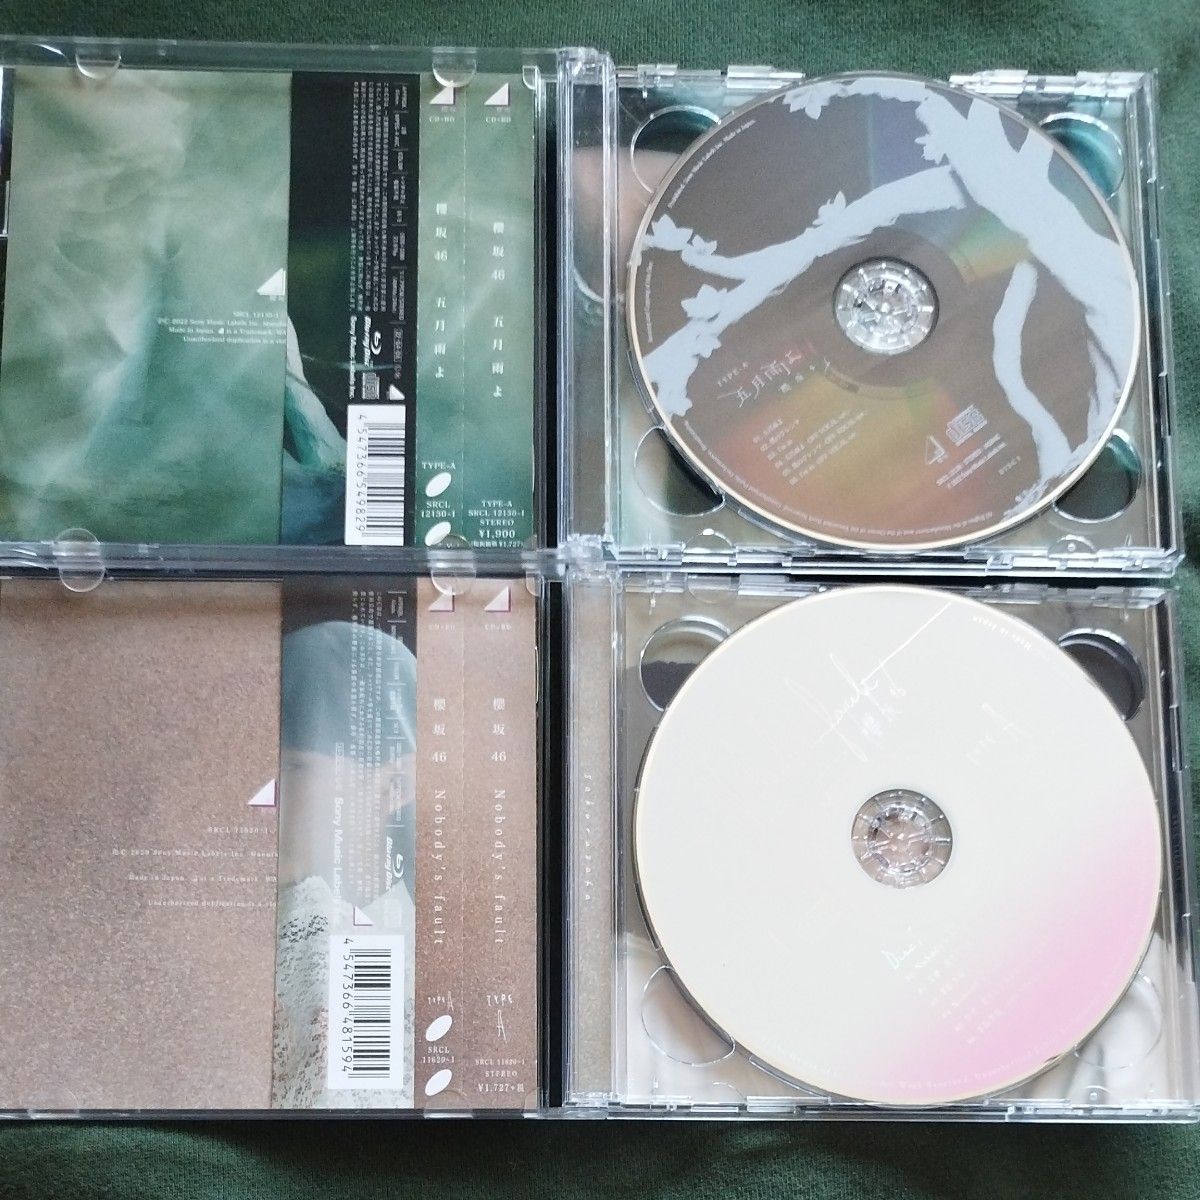 初回仕様限定盤 TYPE-A (取) Blu-ray付 生写真なし 櫻坂46 CD+Blu-ray/ 五月雨よ 22/4/6発売 